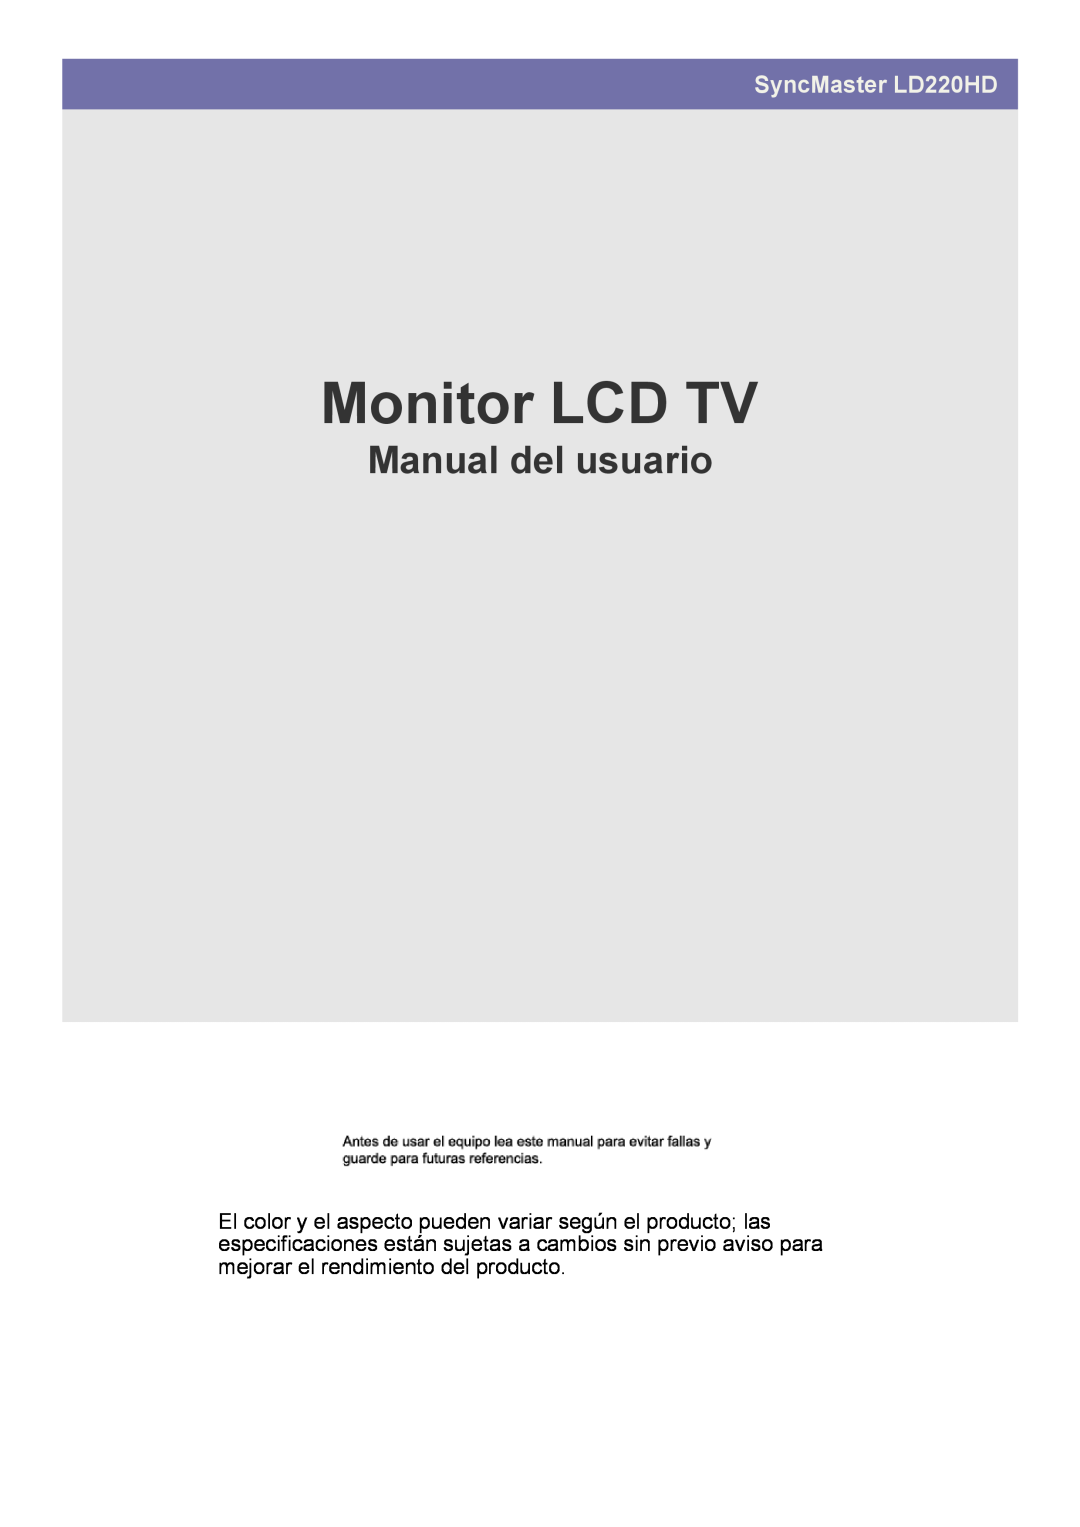 Samsung LS22FMDGF/EN manual LCD TV-Monitor, Benutzerhandbuch, SyncMaster LD220HD 